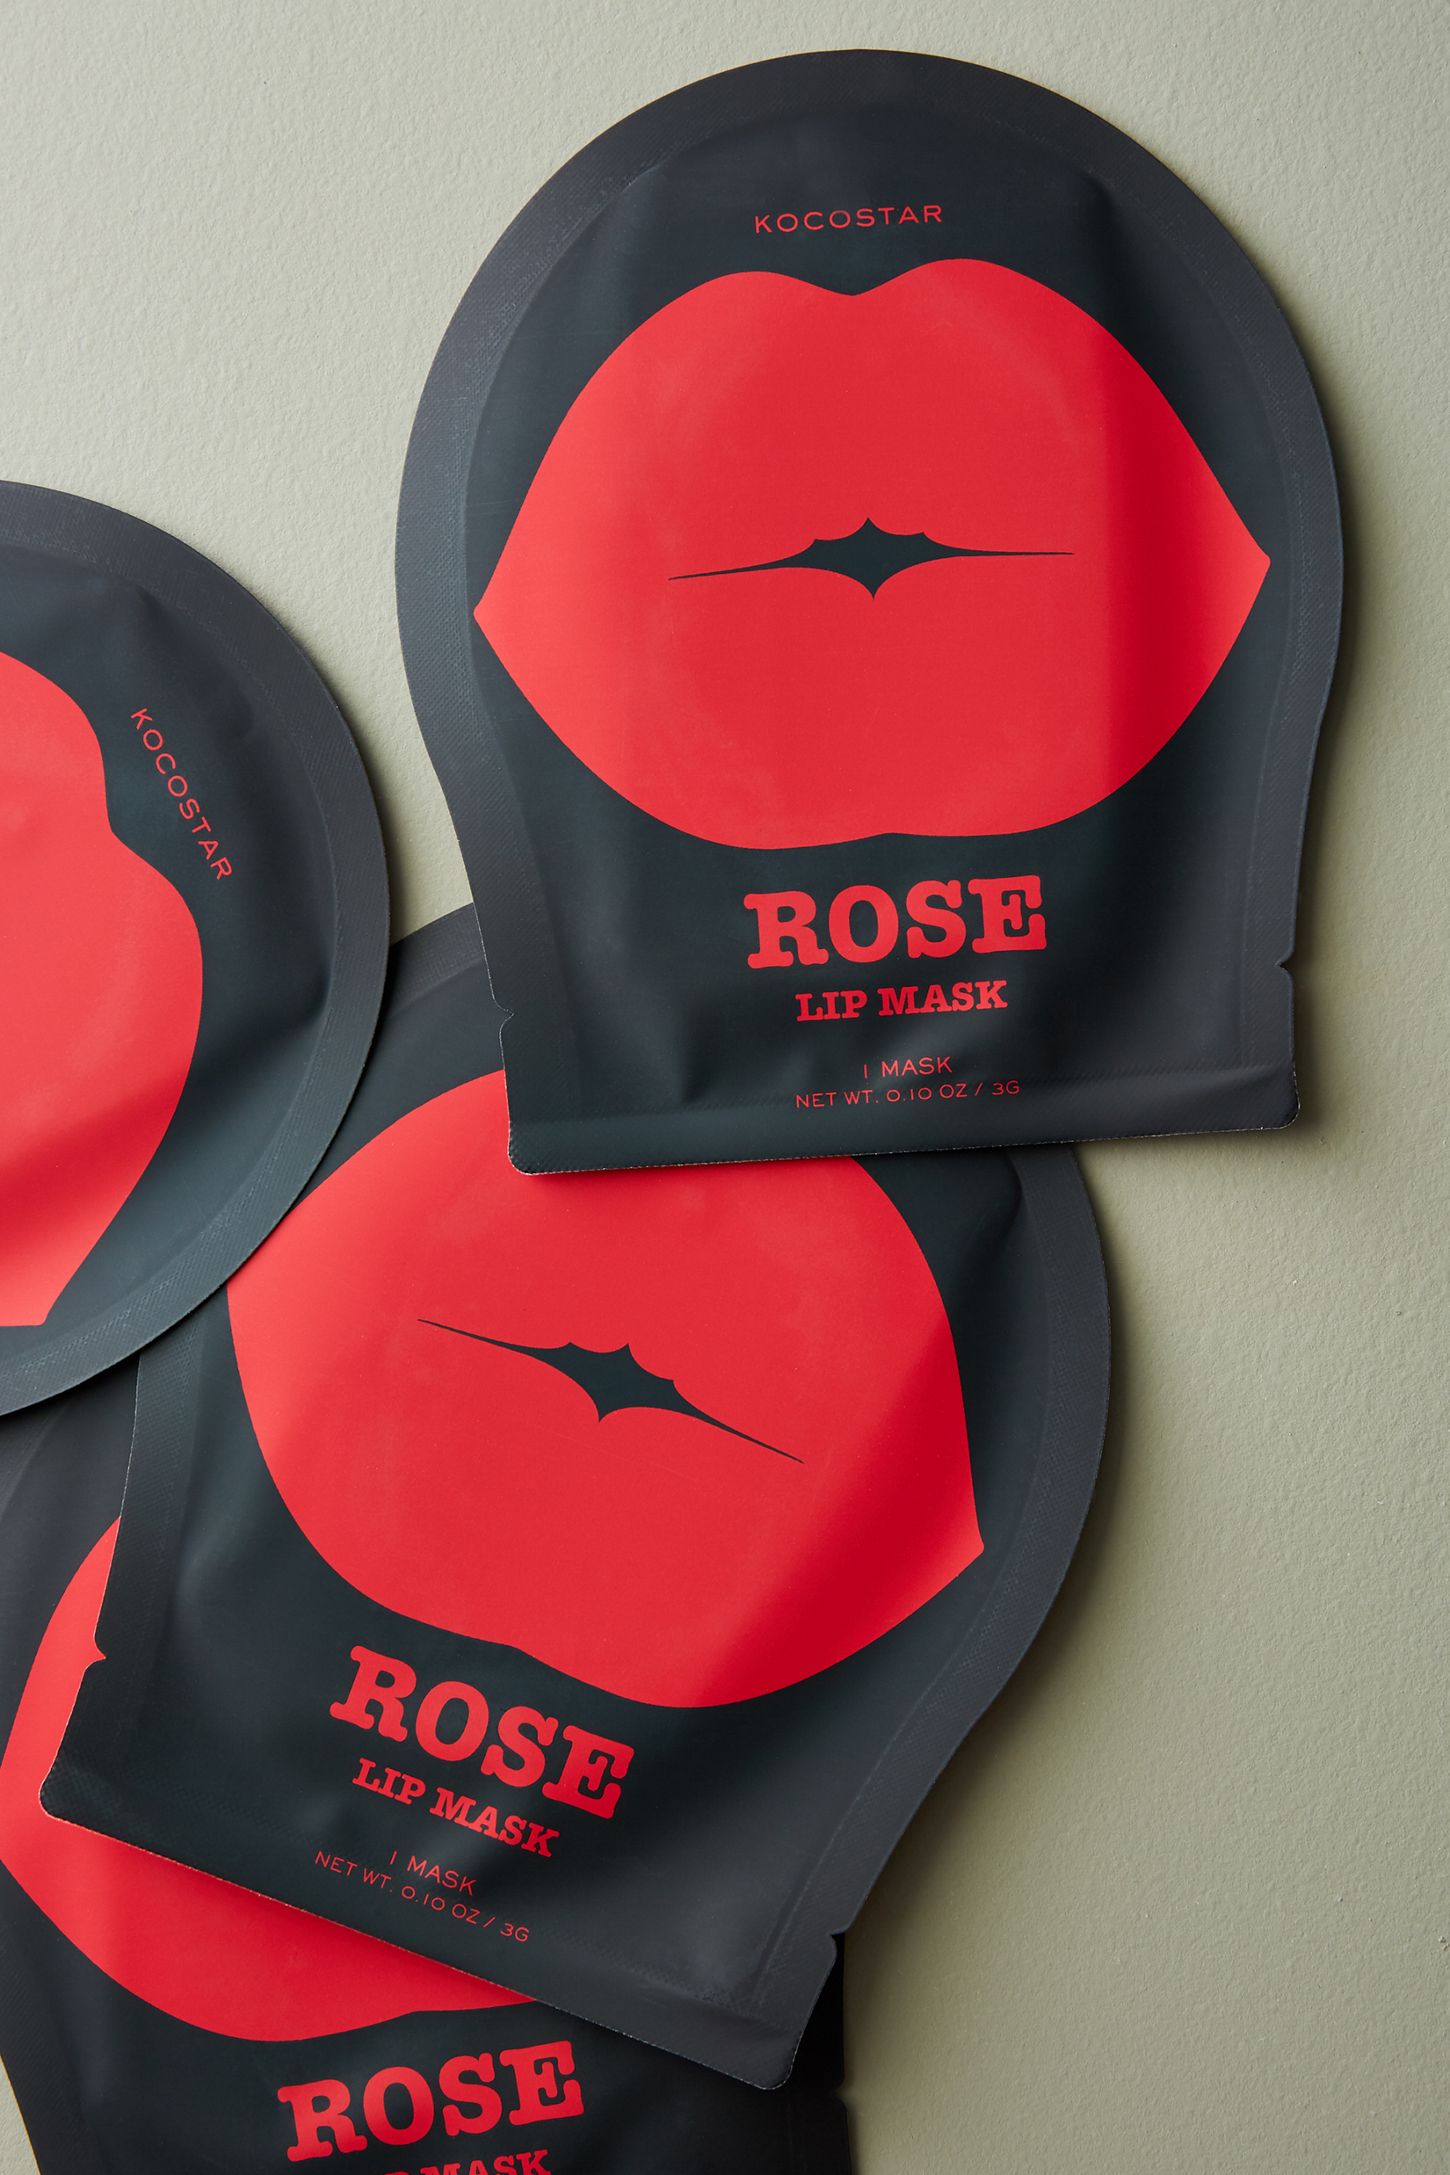 KOCOSTAR, KOCOSTAR Rose Lip Mask, KOCOSTAR Rose Lip Mask รีวิว, KOCOSTAR Rose Lip Mask ราคา, KOCOSTAR Rose Lip Mask Single, KOCOSTAR Rose Lip Mask Single 3 g., มาสก์ปากแบบเจลลี่